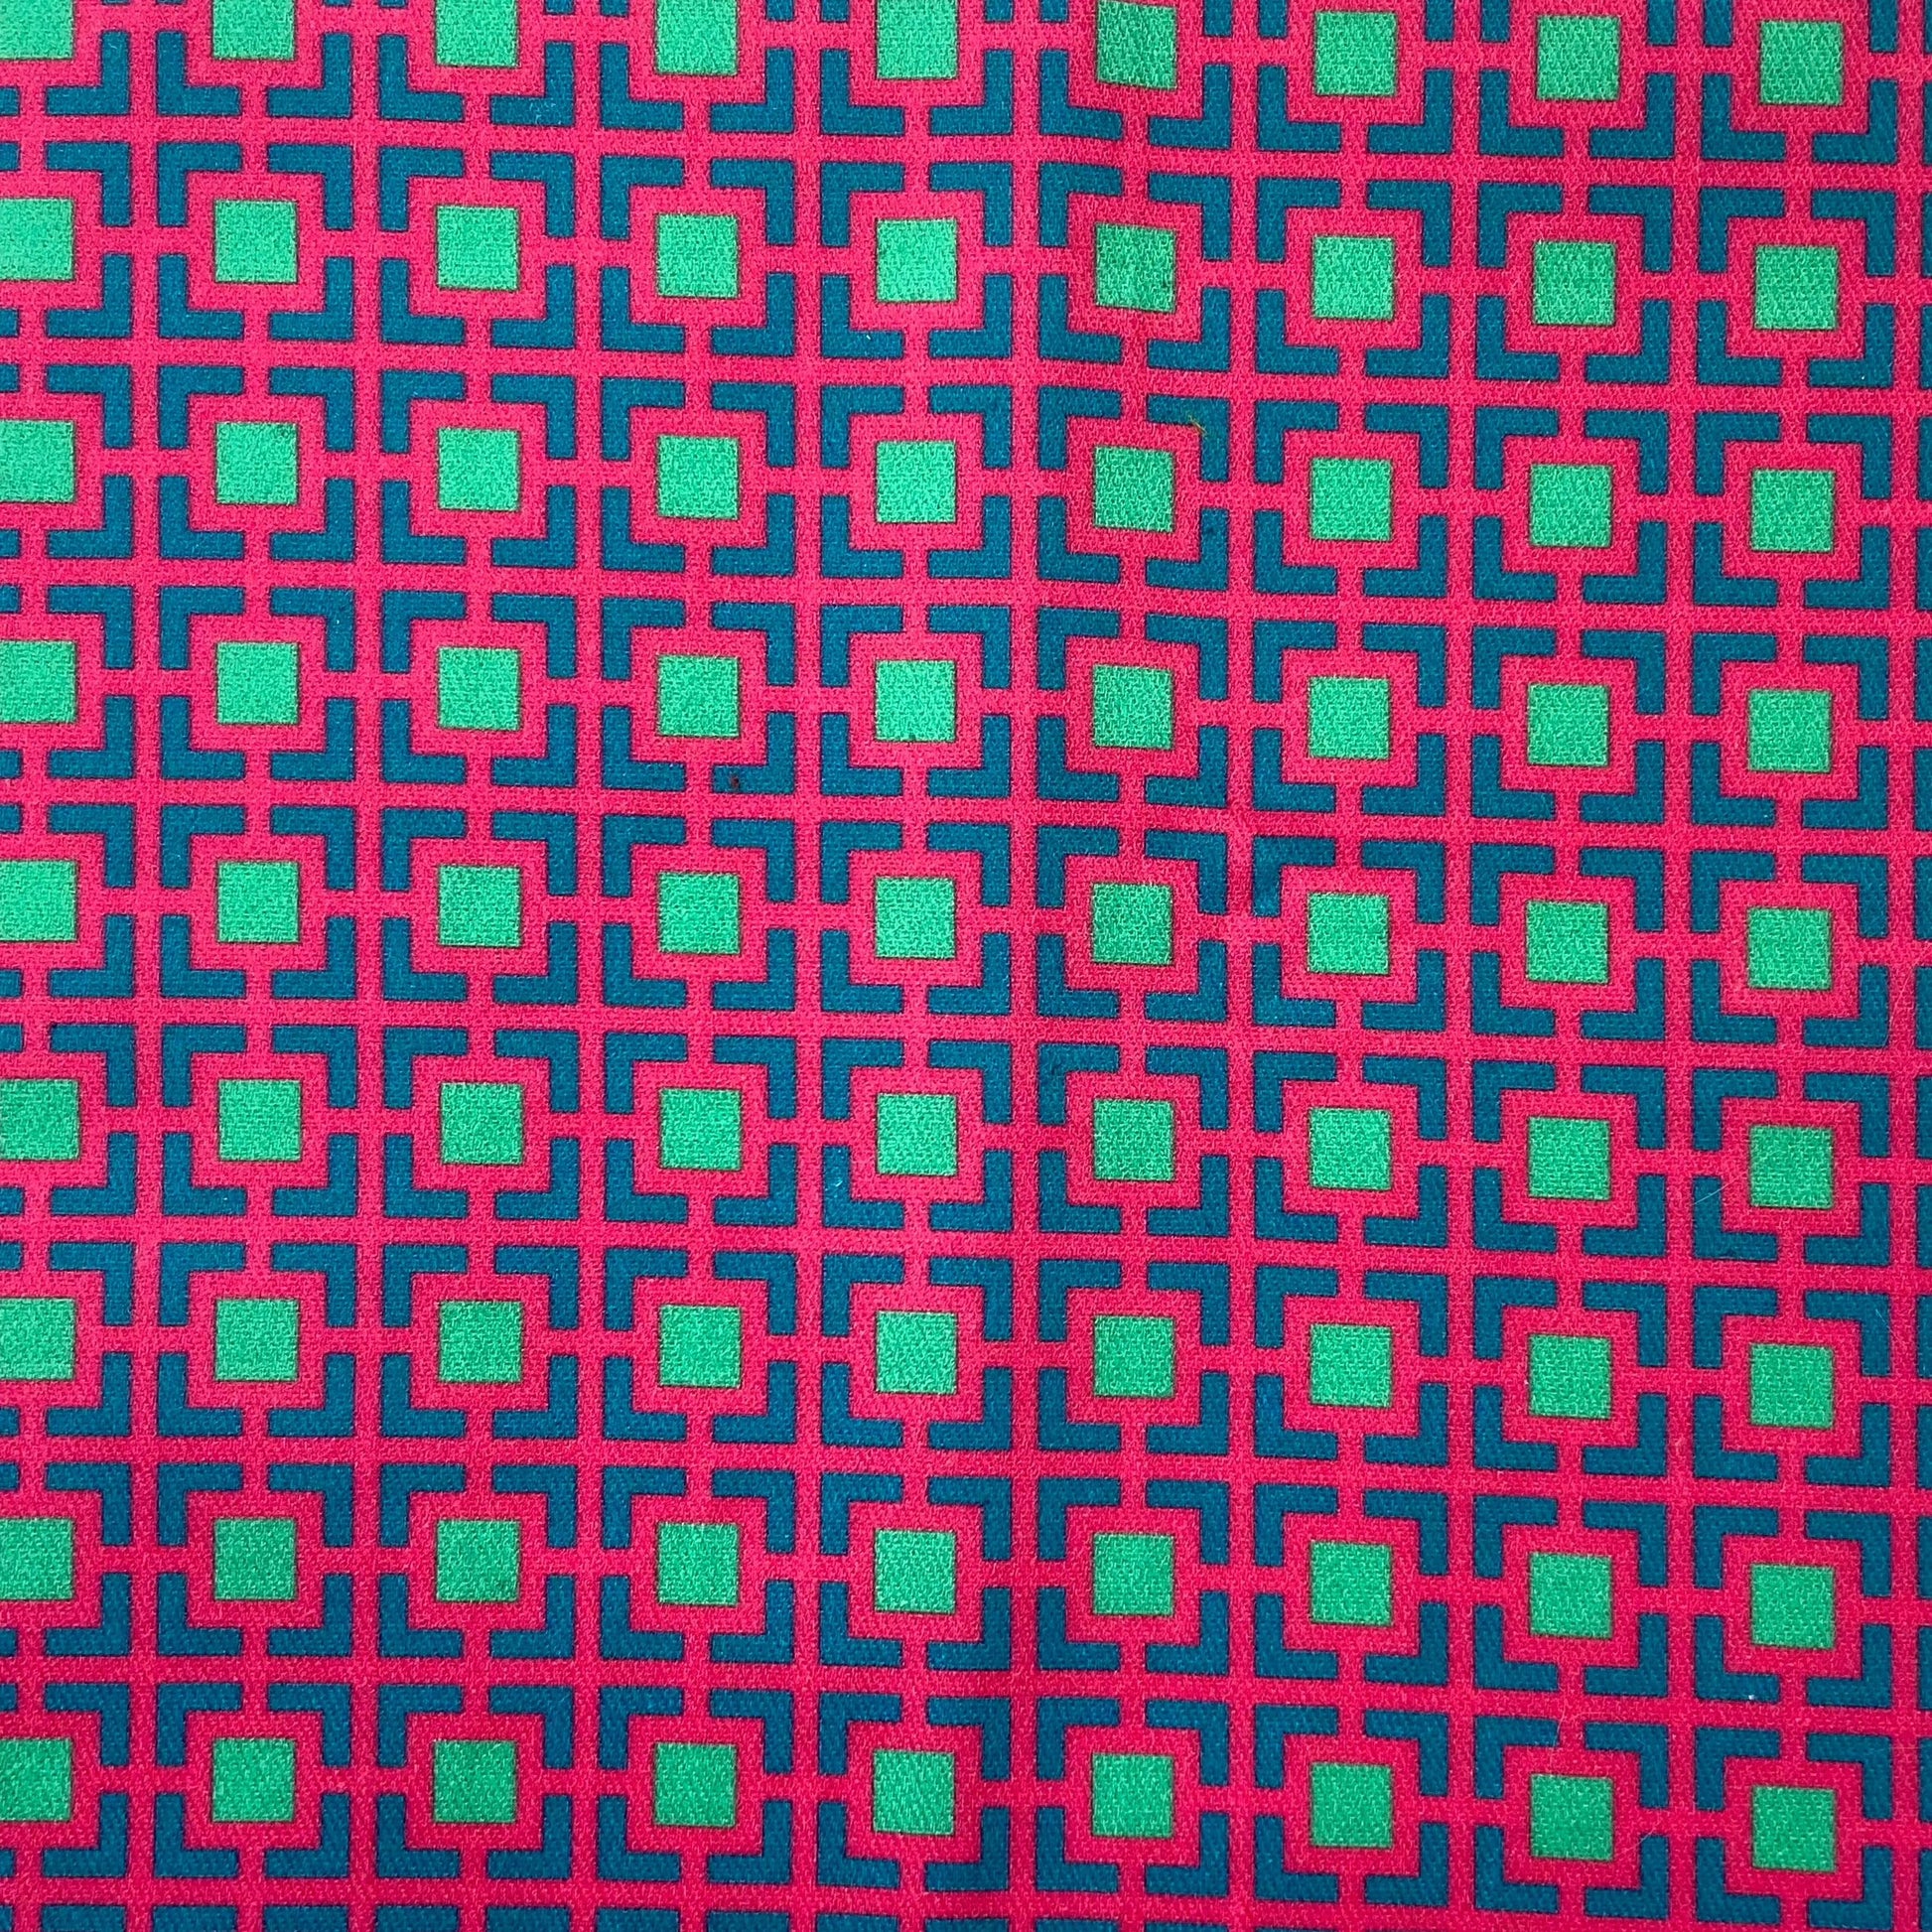 Sergé de coton imprimé motif carrés très colros fuschia bleu canadr paon turquoise vert d'eau contratse géométrique Cour Carrée dessin de jardins symétriques pop flashy rose  